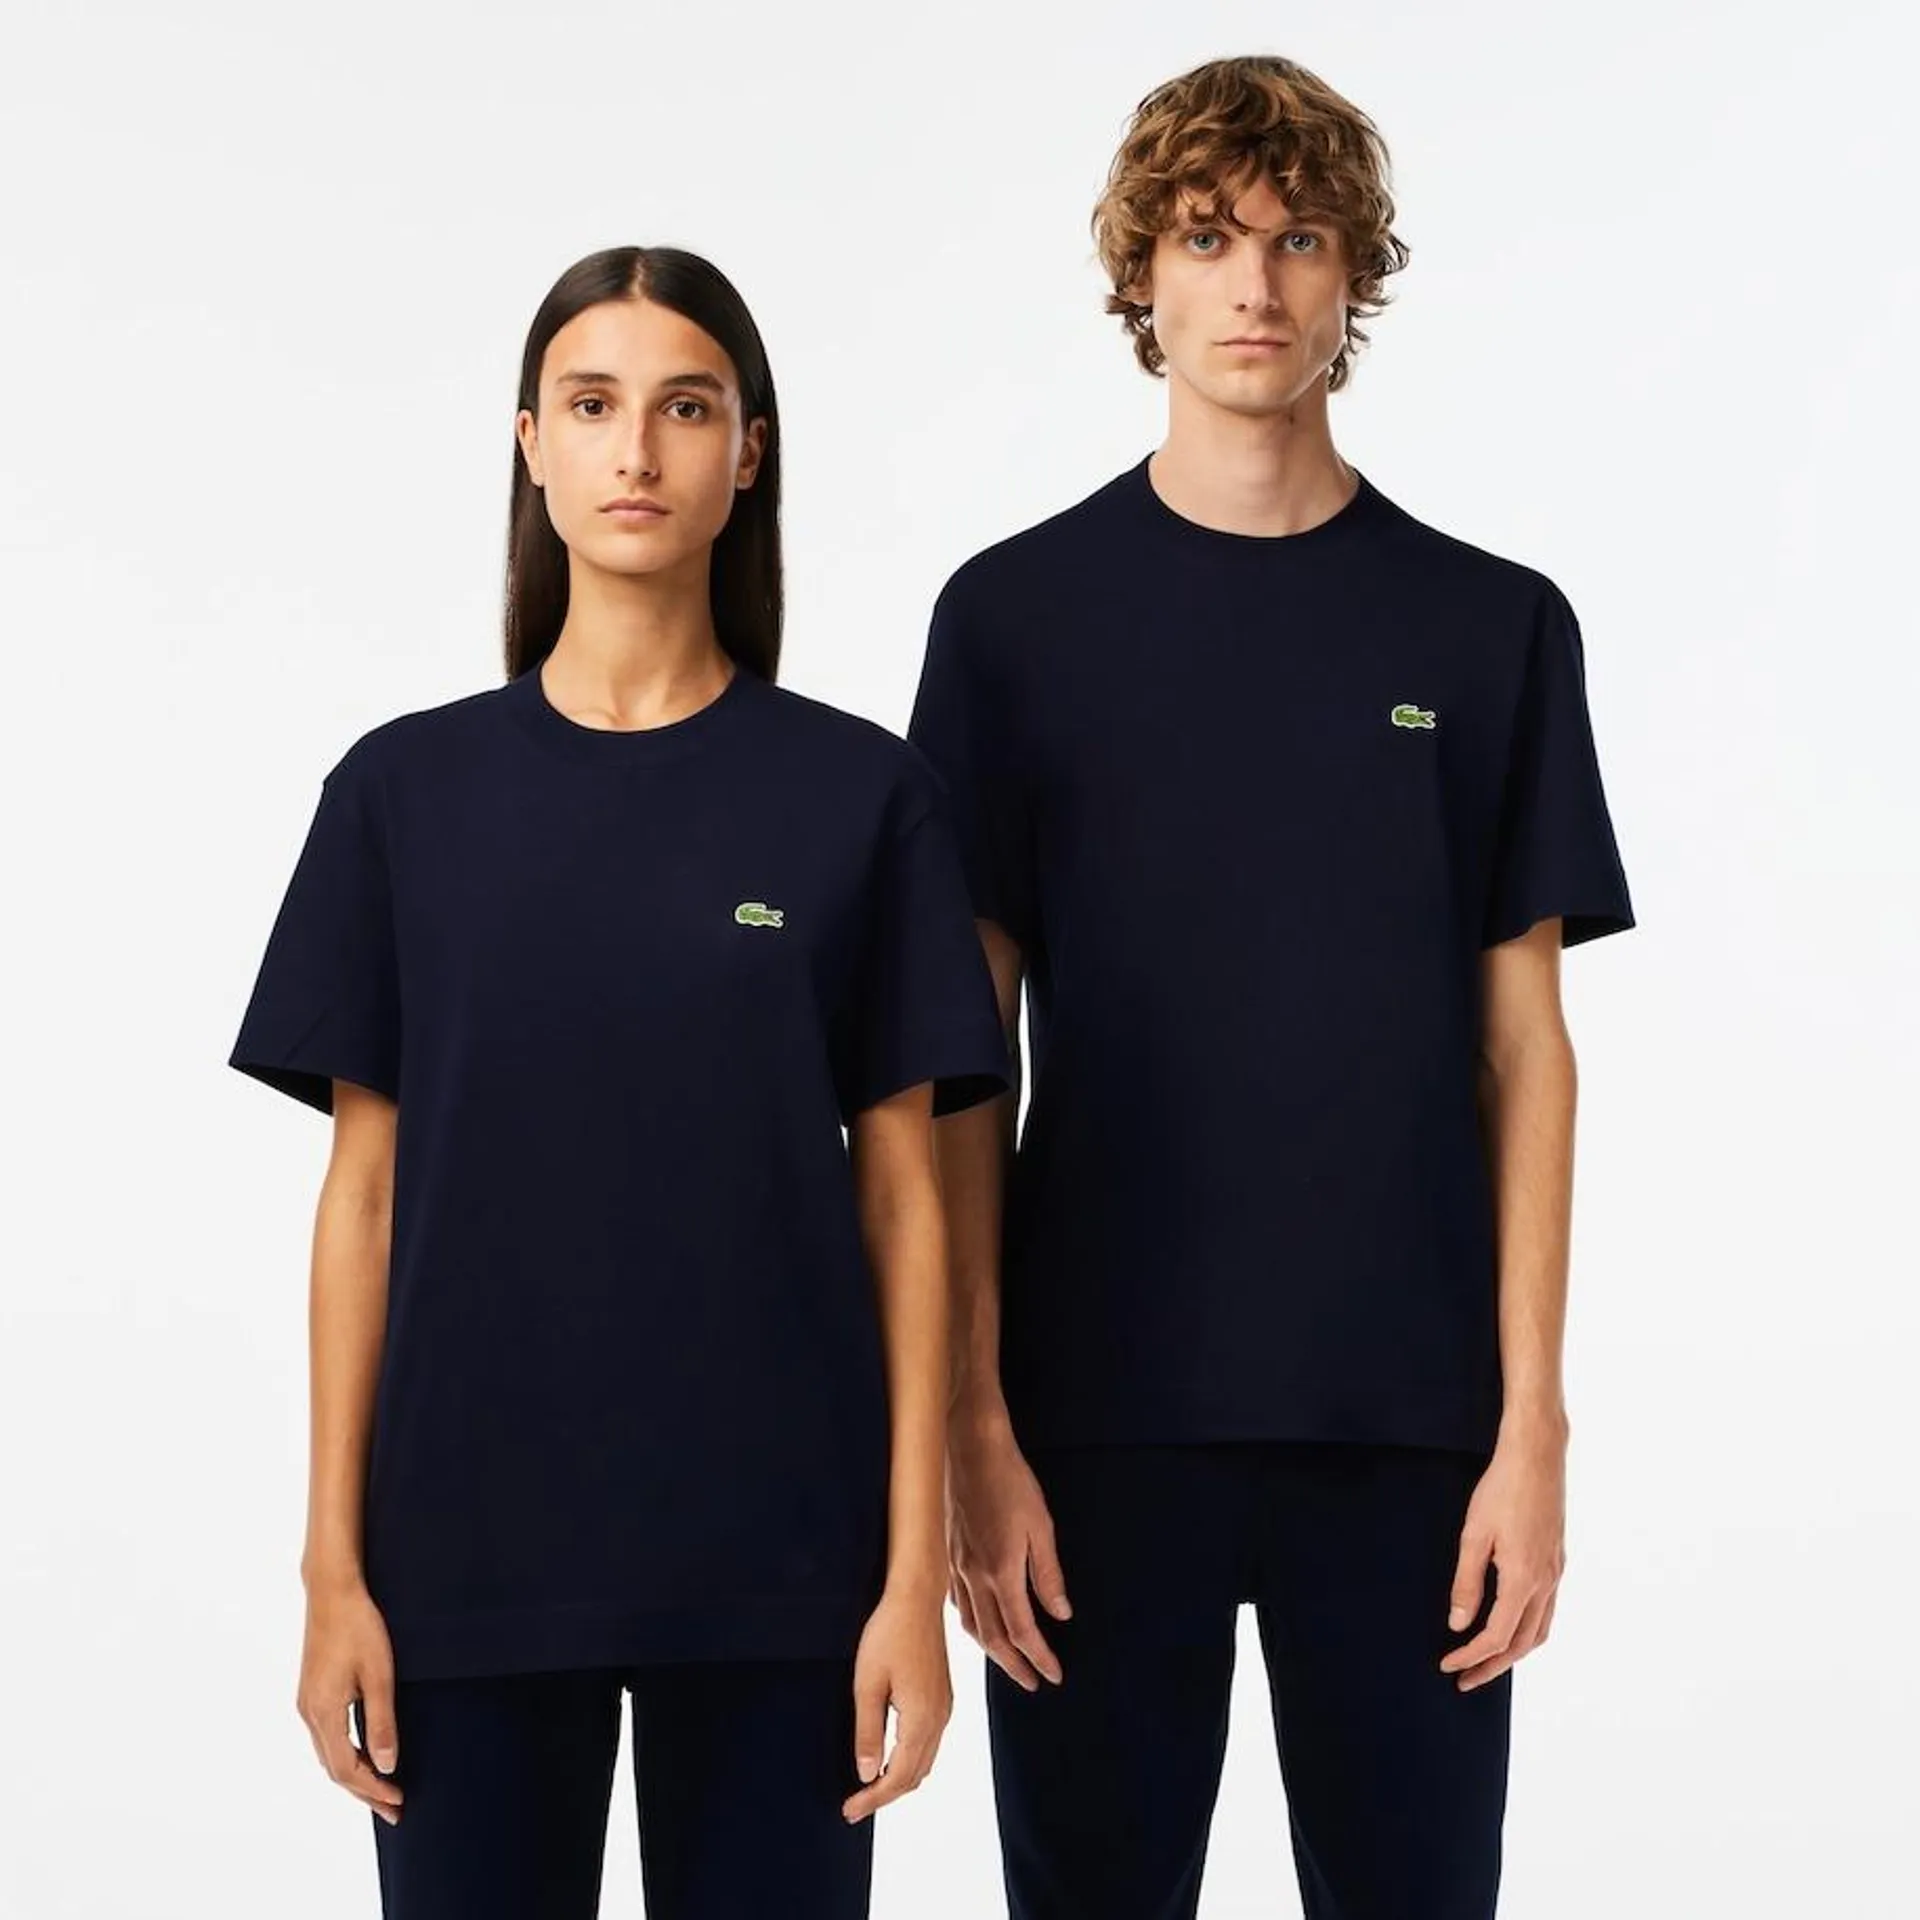 Camiseta unisex de algodón ecológico con cuello redondo